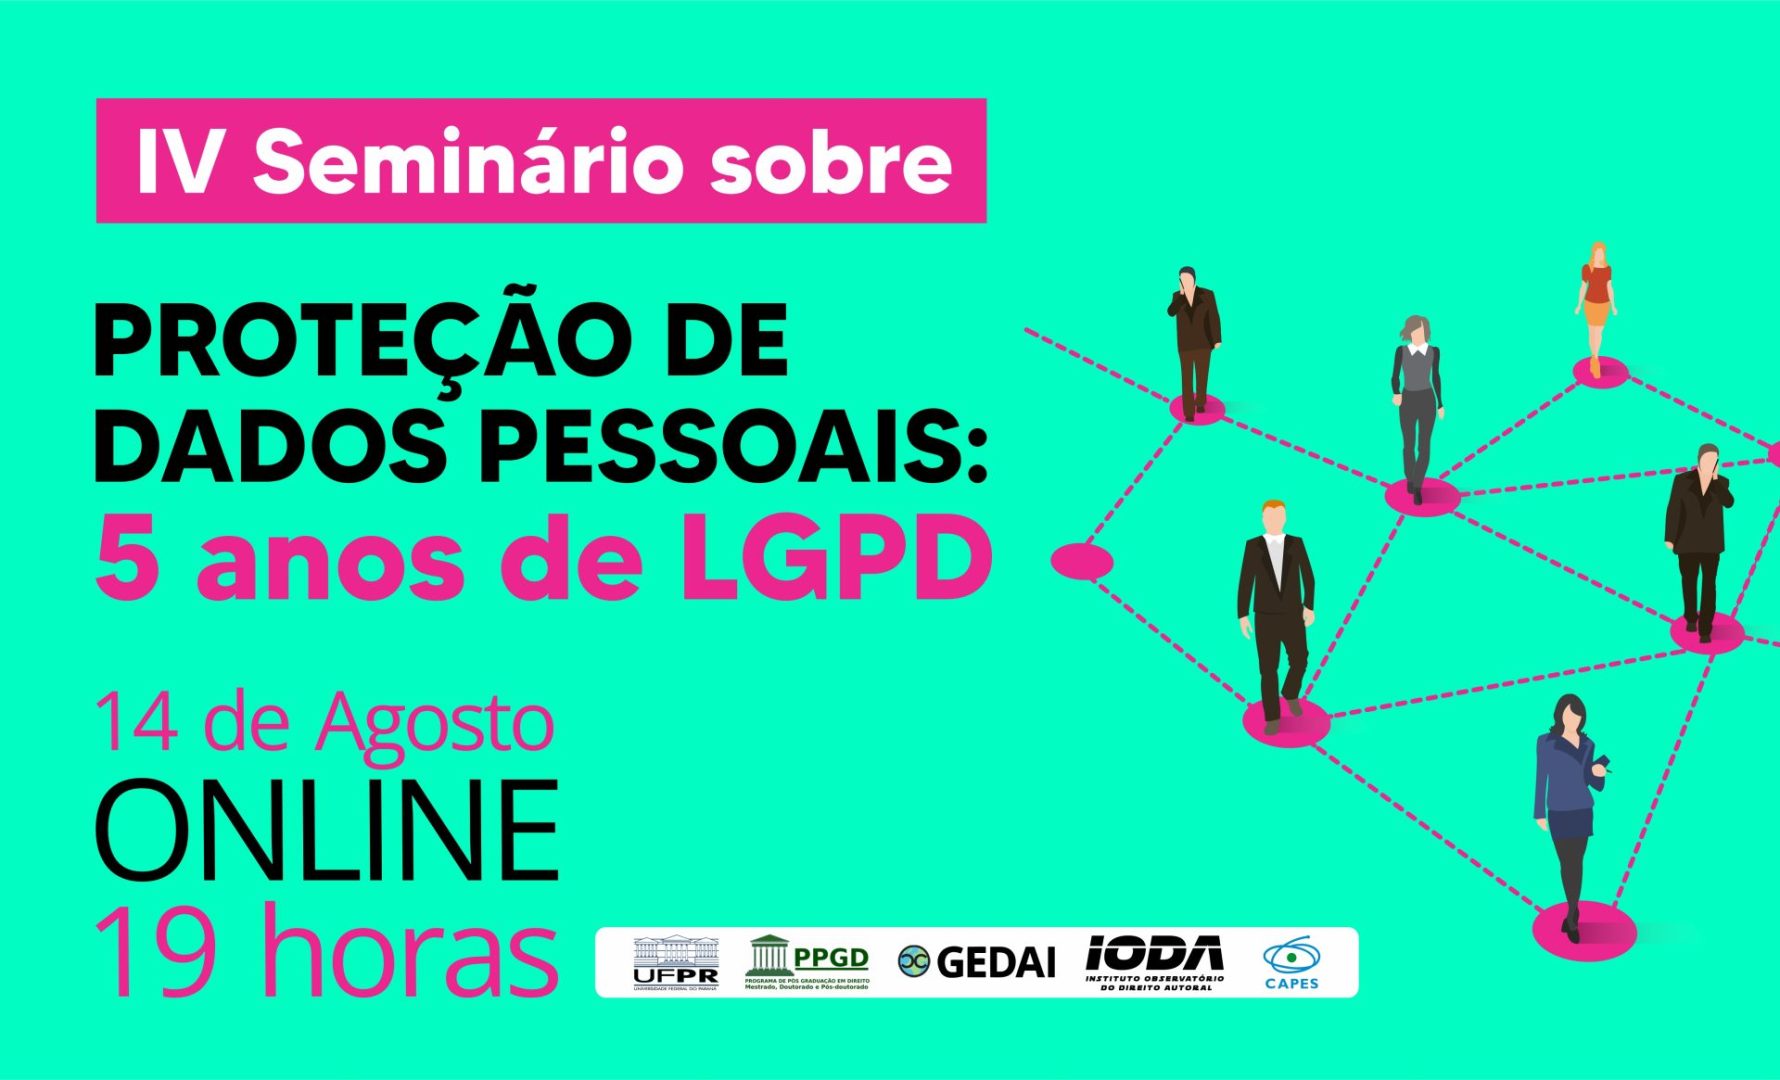 IV Seminário sobre PROTEÇÃO DE DADOS PESSOAIS – Webinar 5 anos de LGPD